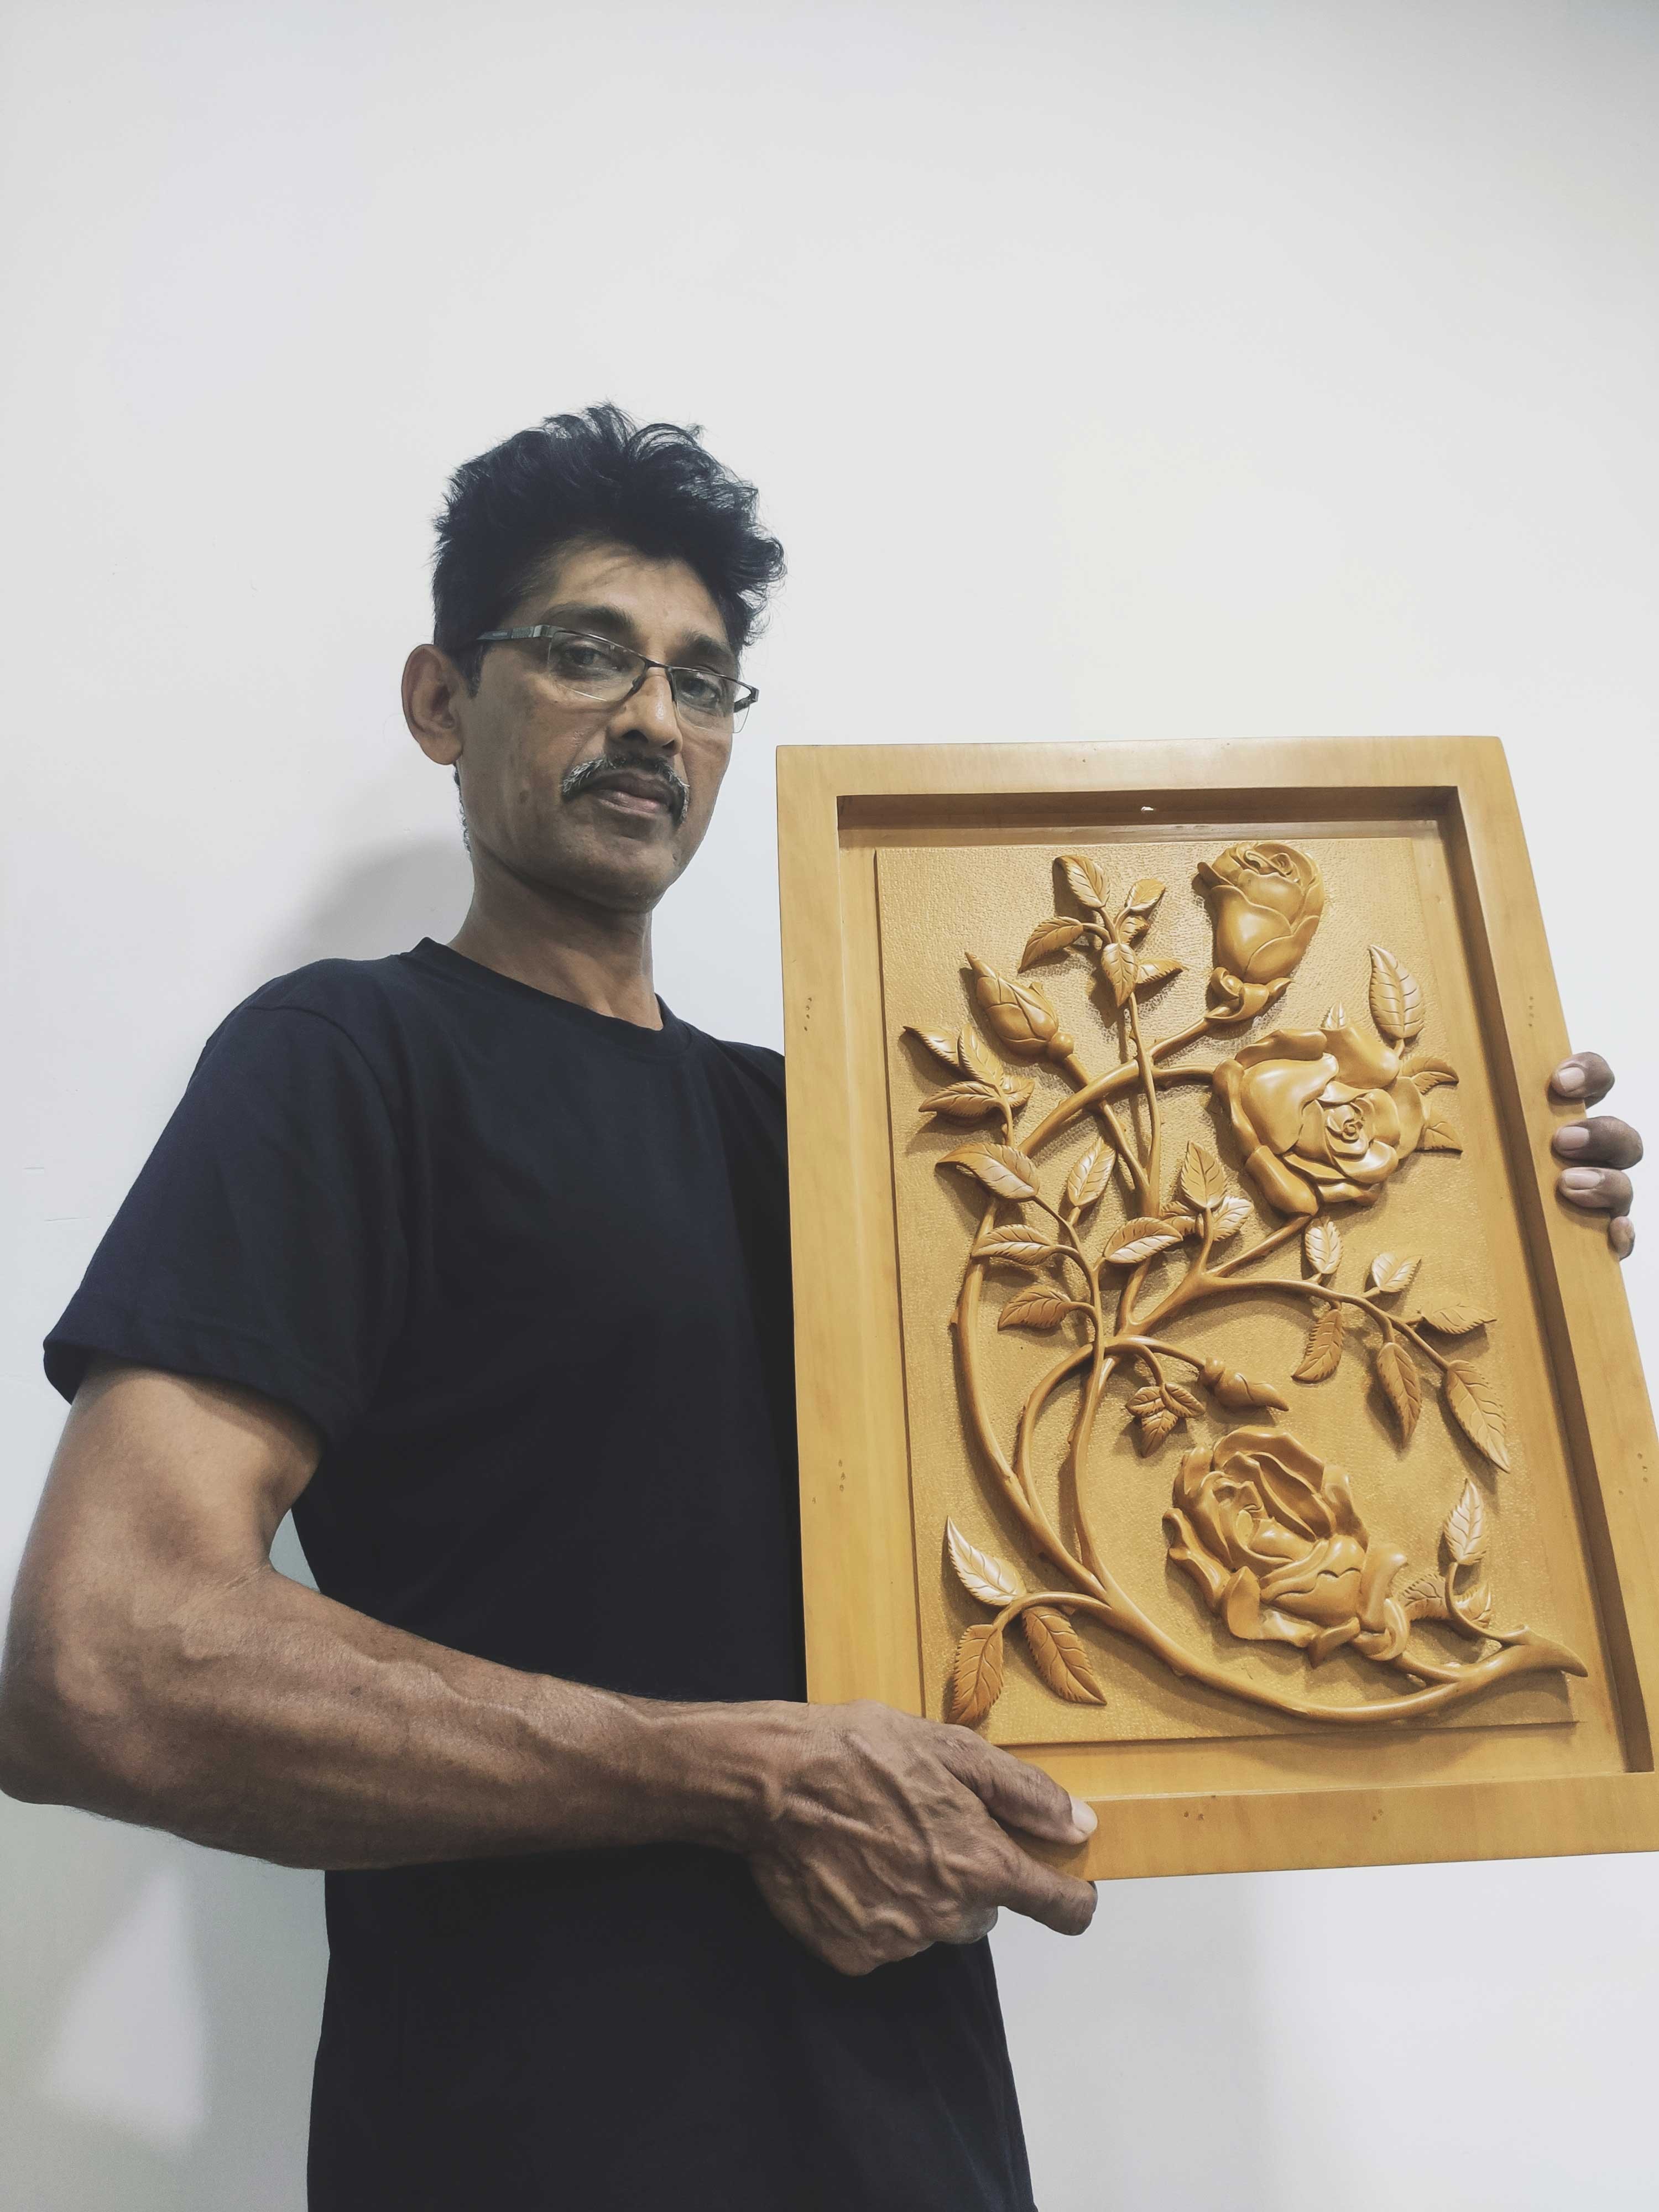 Roses and thorns wood carving by Widalath Arachchilage Jayathilaka